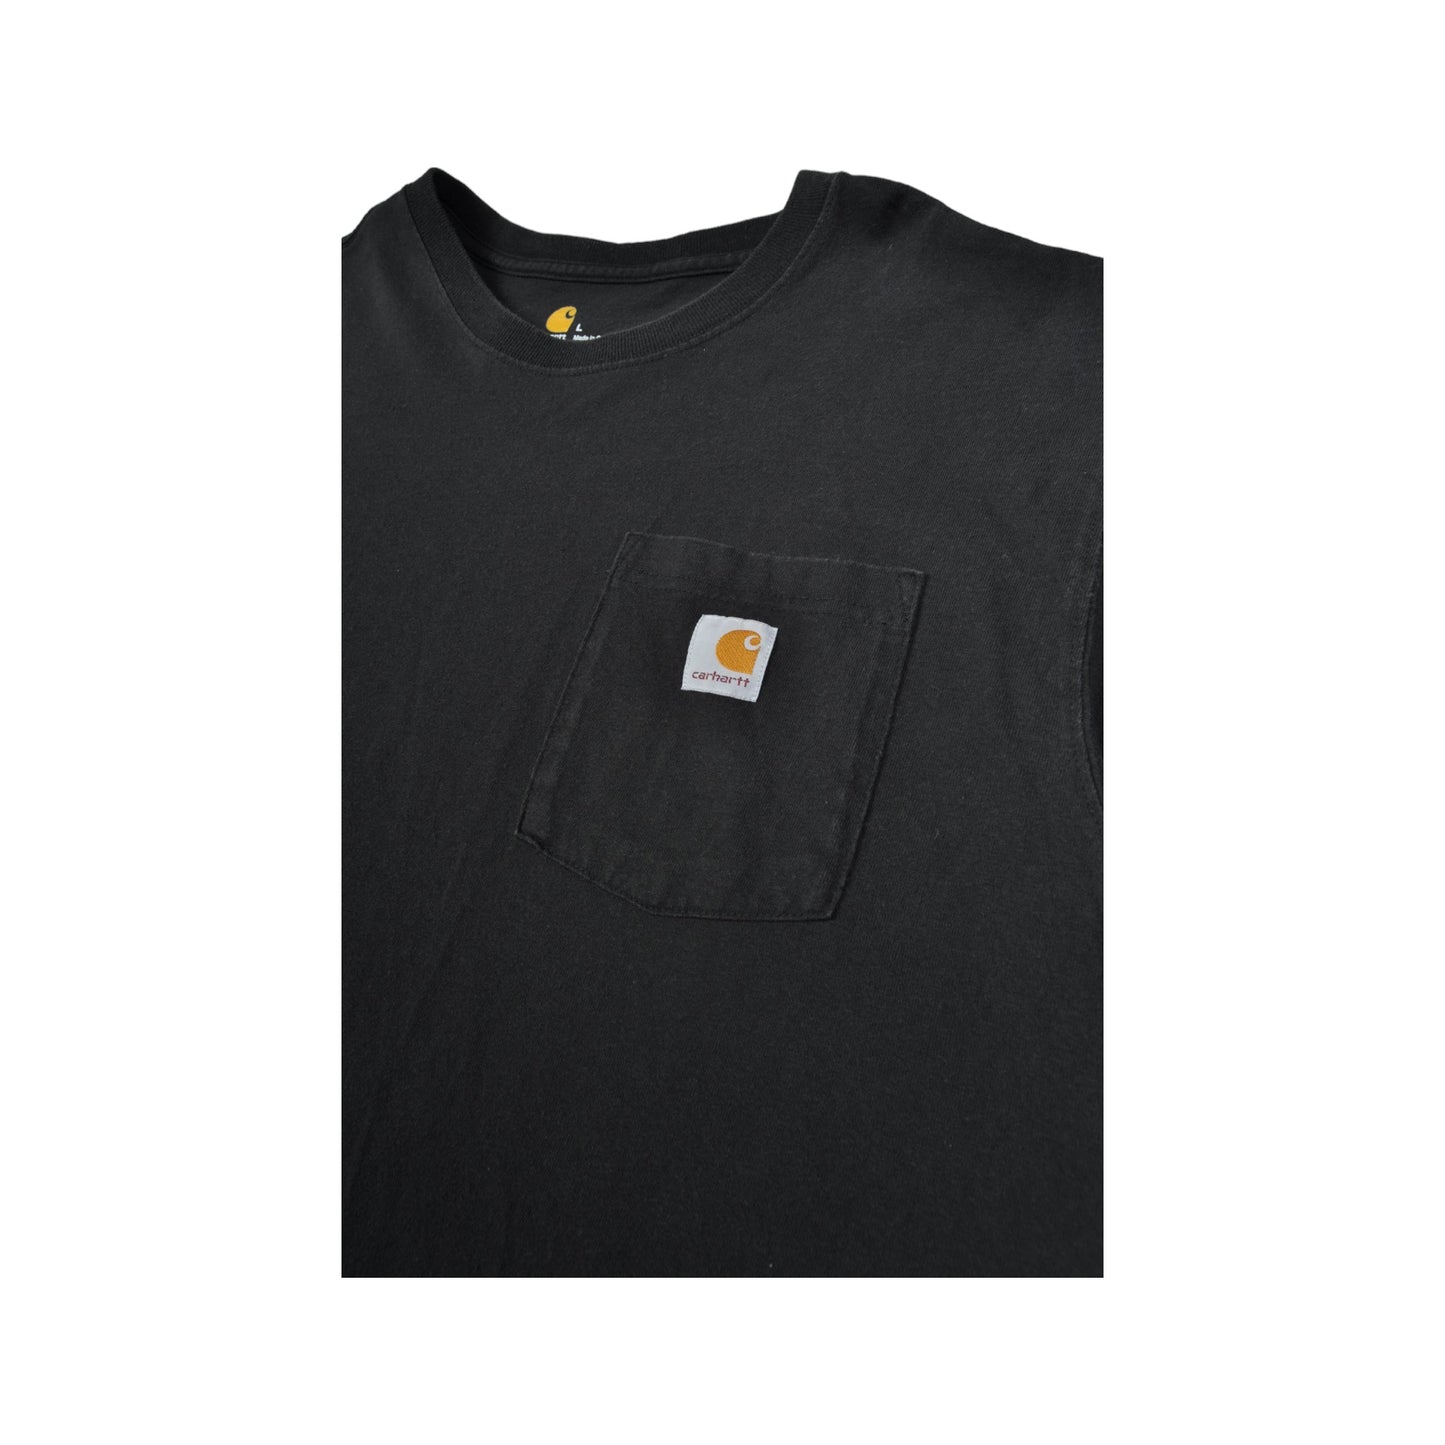 Vintage Carhartt Pocket T-Shirt Black Large